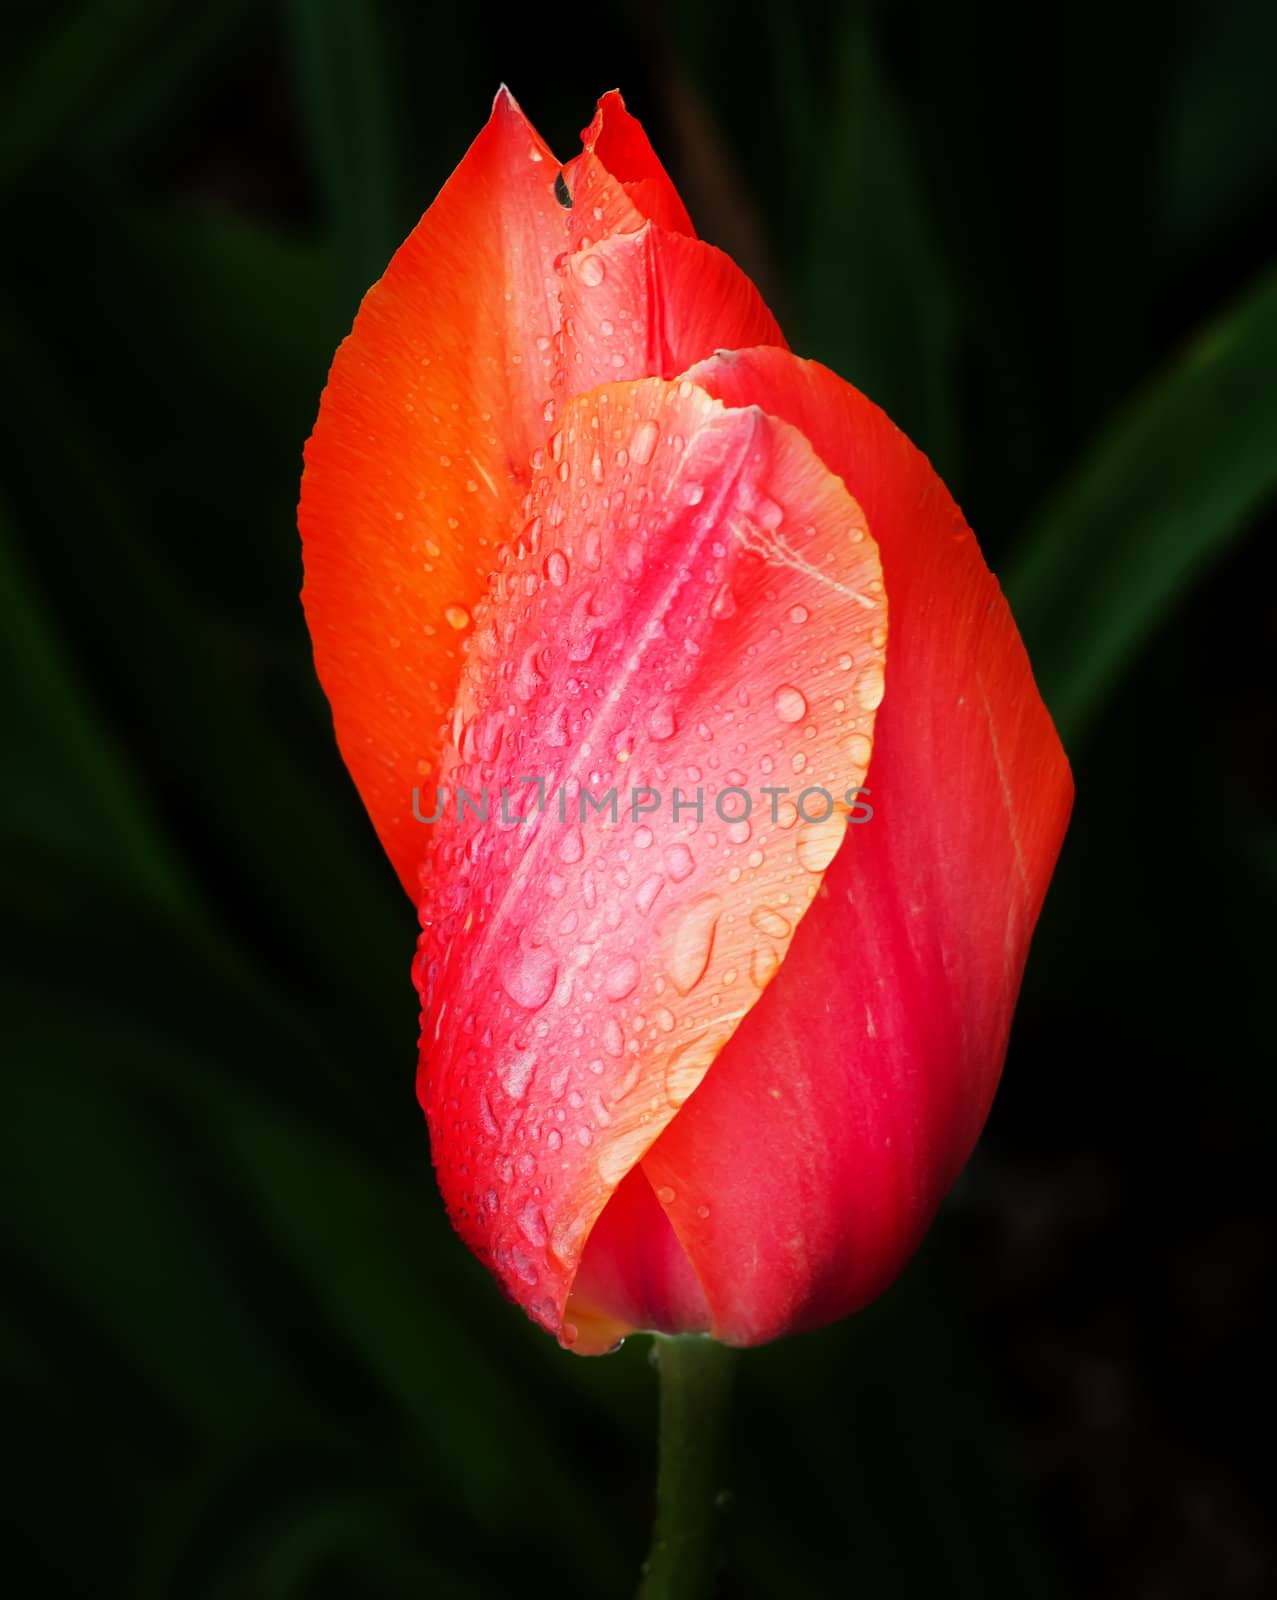 Pink Orange Tulip Flower Skagit Valley Washington State by bill_perry